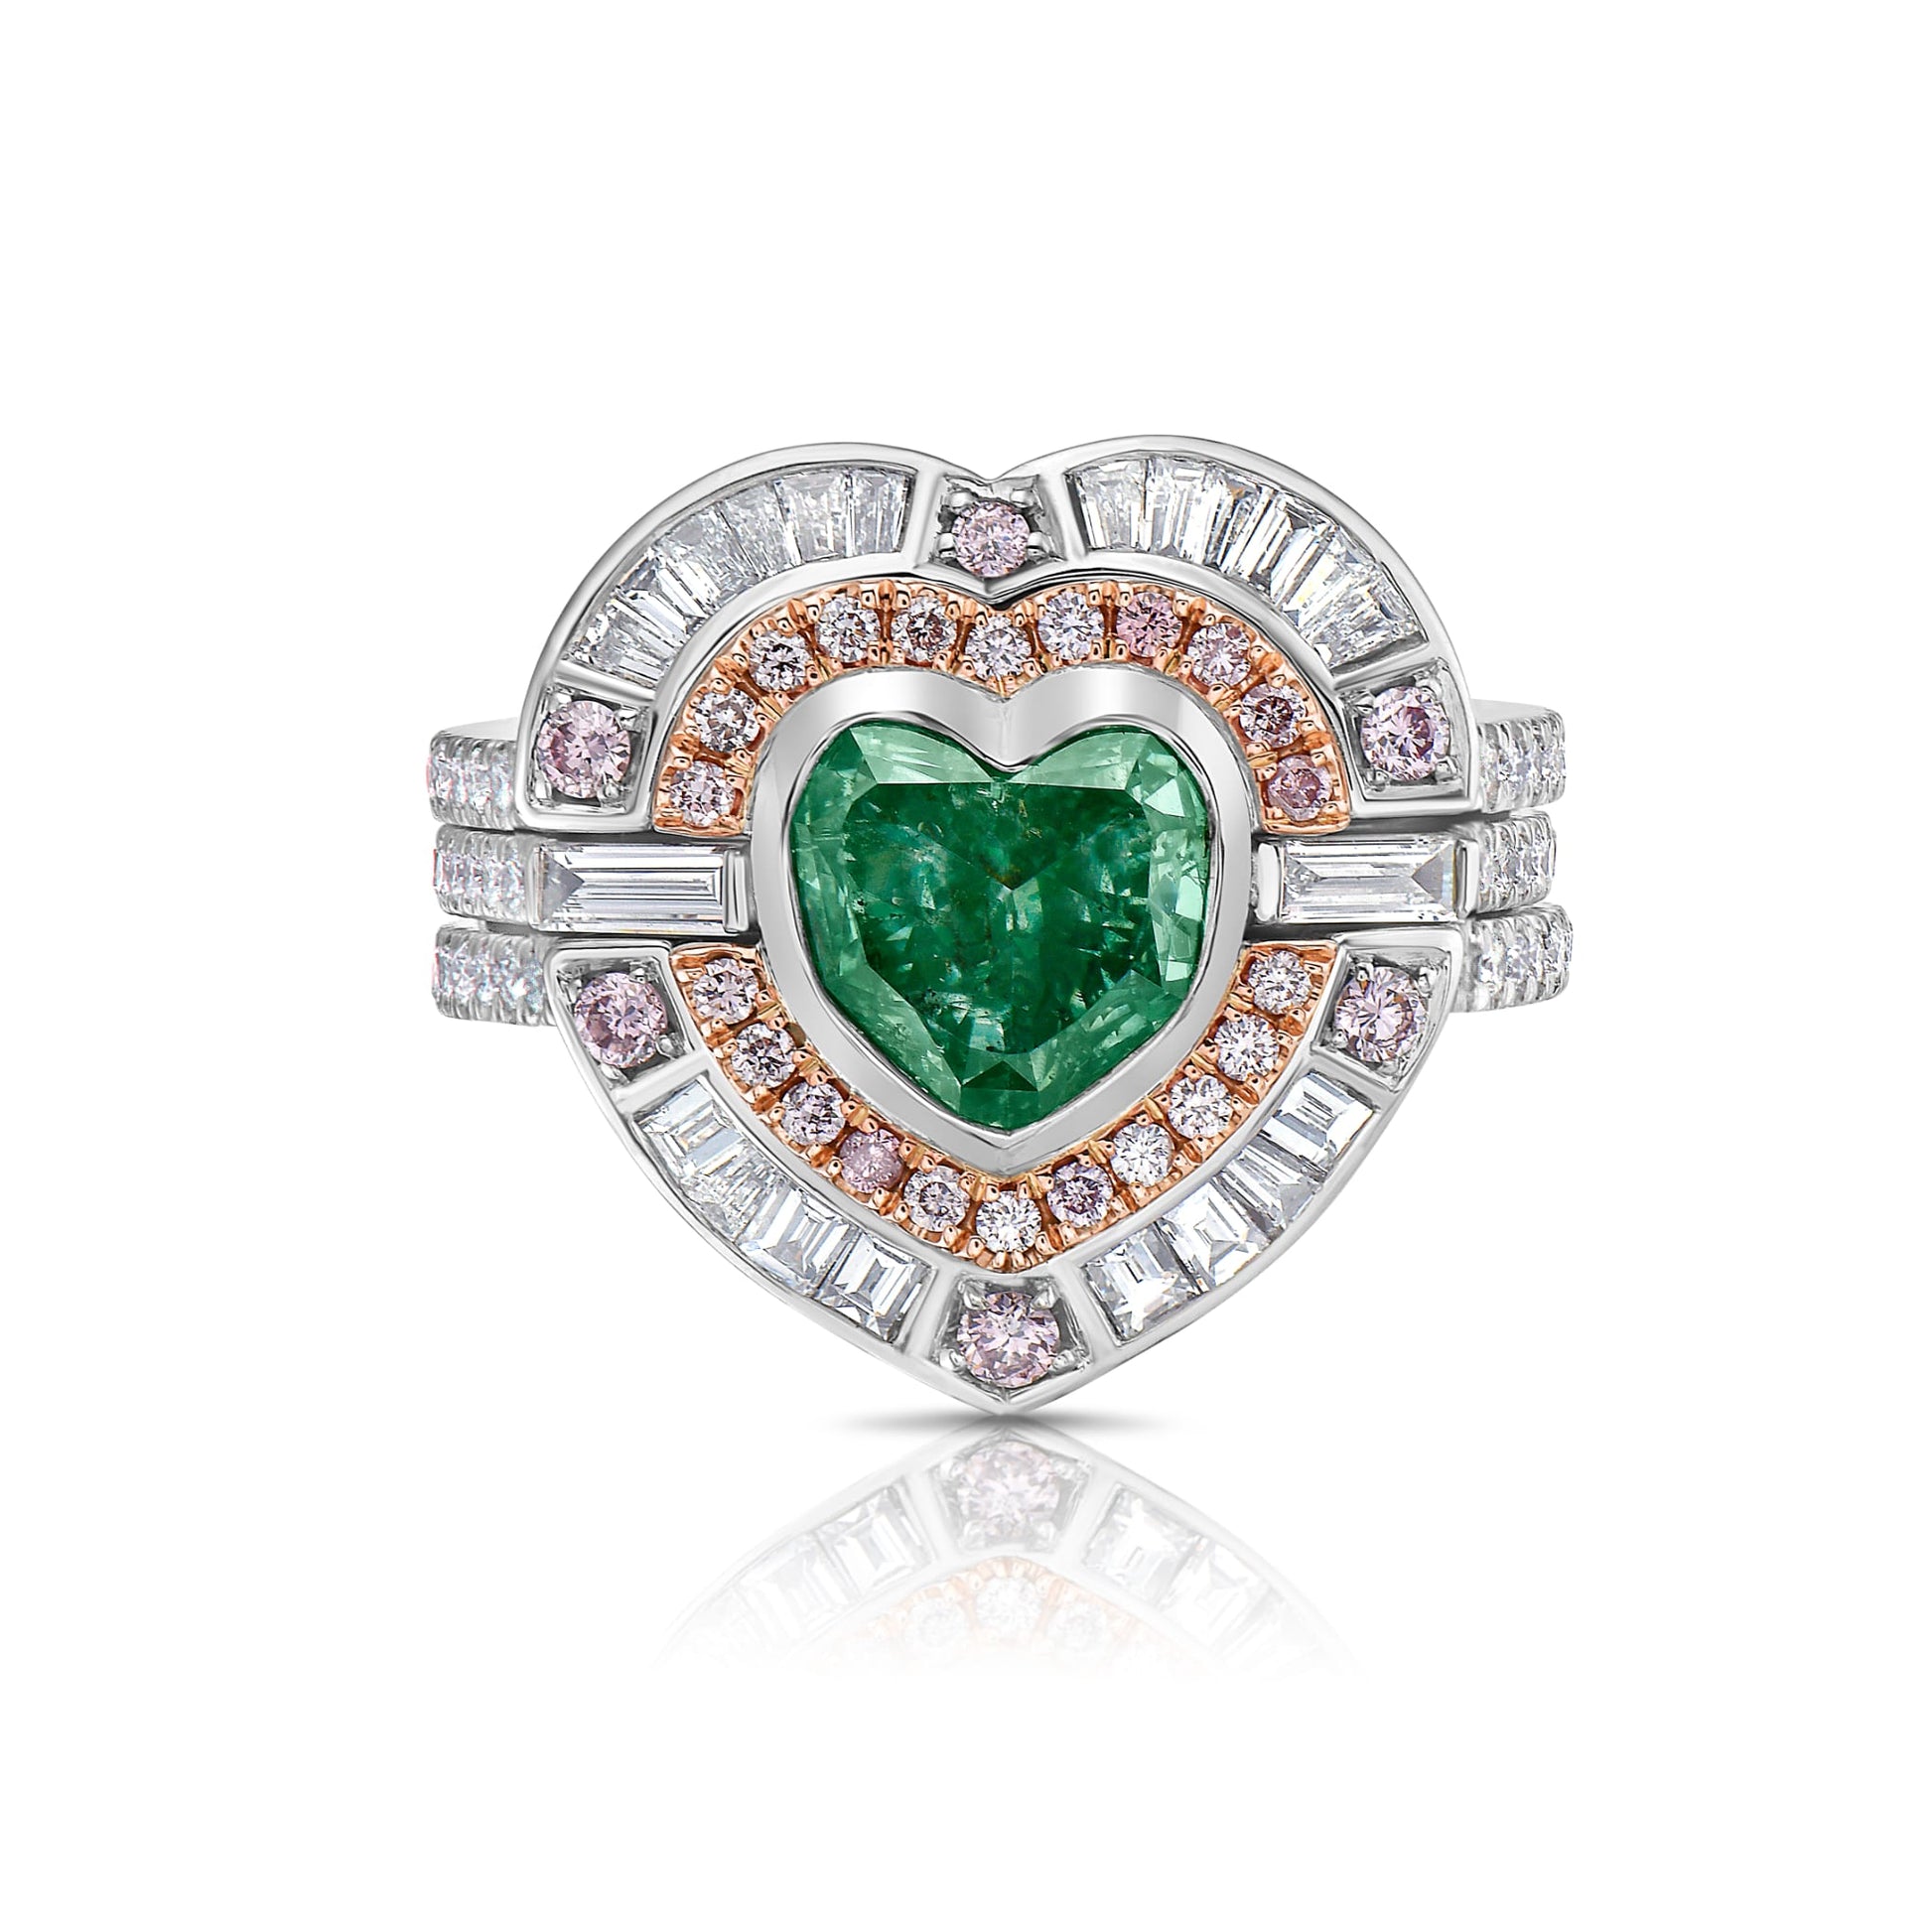 2 carat fancy intense green heart shape diamond. Fancy intense green diamond. Green diamond heart shape